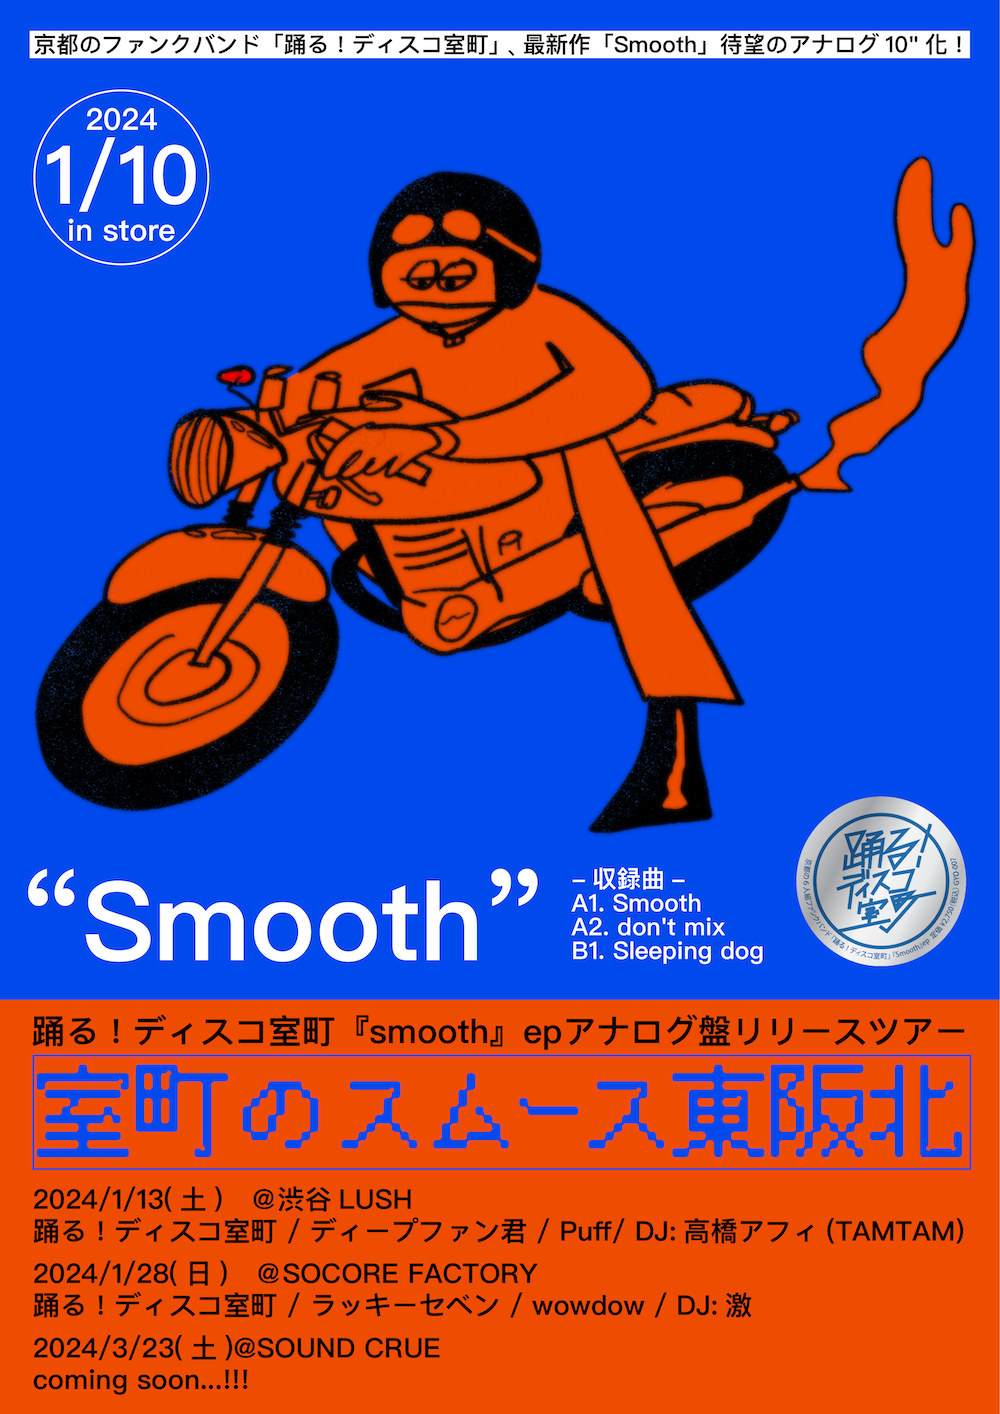 踊る！ディスコ室町『smooth』epアナログ盤リリースツアー「室町のスムース東阪北」